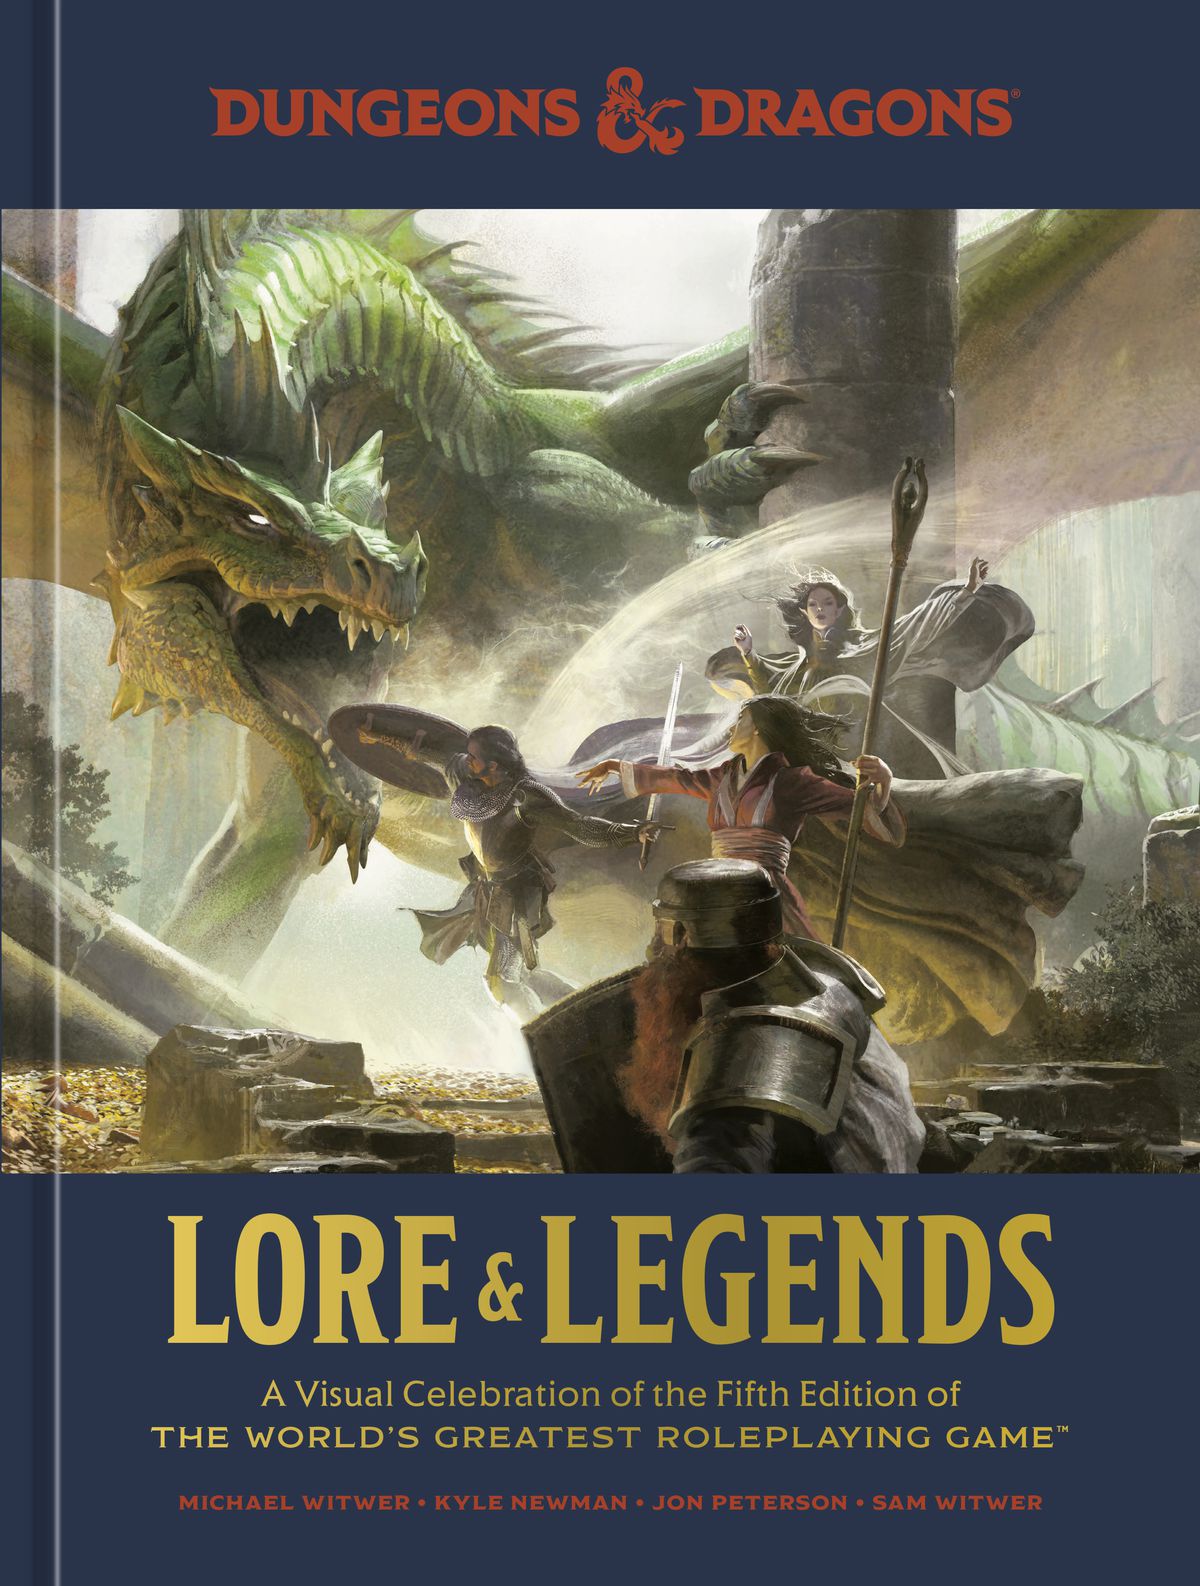 En rendering i full upplösning av omslaget till Lore & Legends, som visar en grön drake som slåss mot ett gäng äventyrare.  En pansardvärg är i förgrunden, en mänsklig krigare i bakgrunden och två spallcasters däremellan.